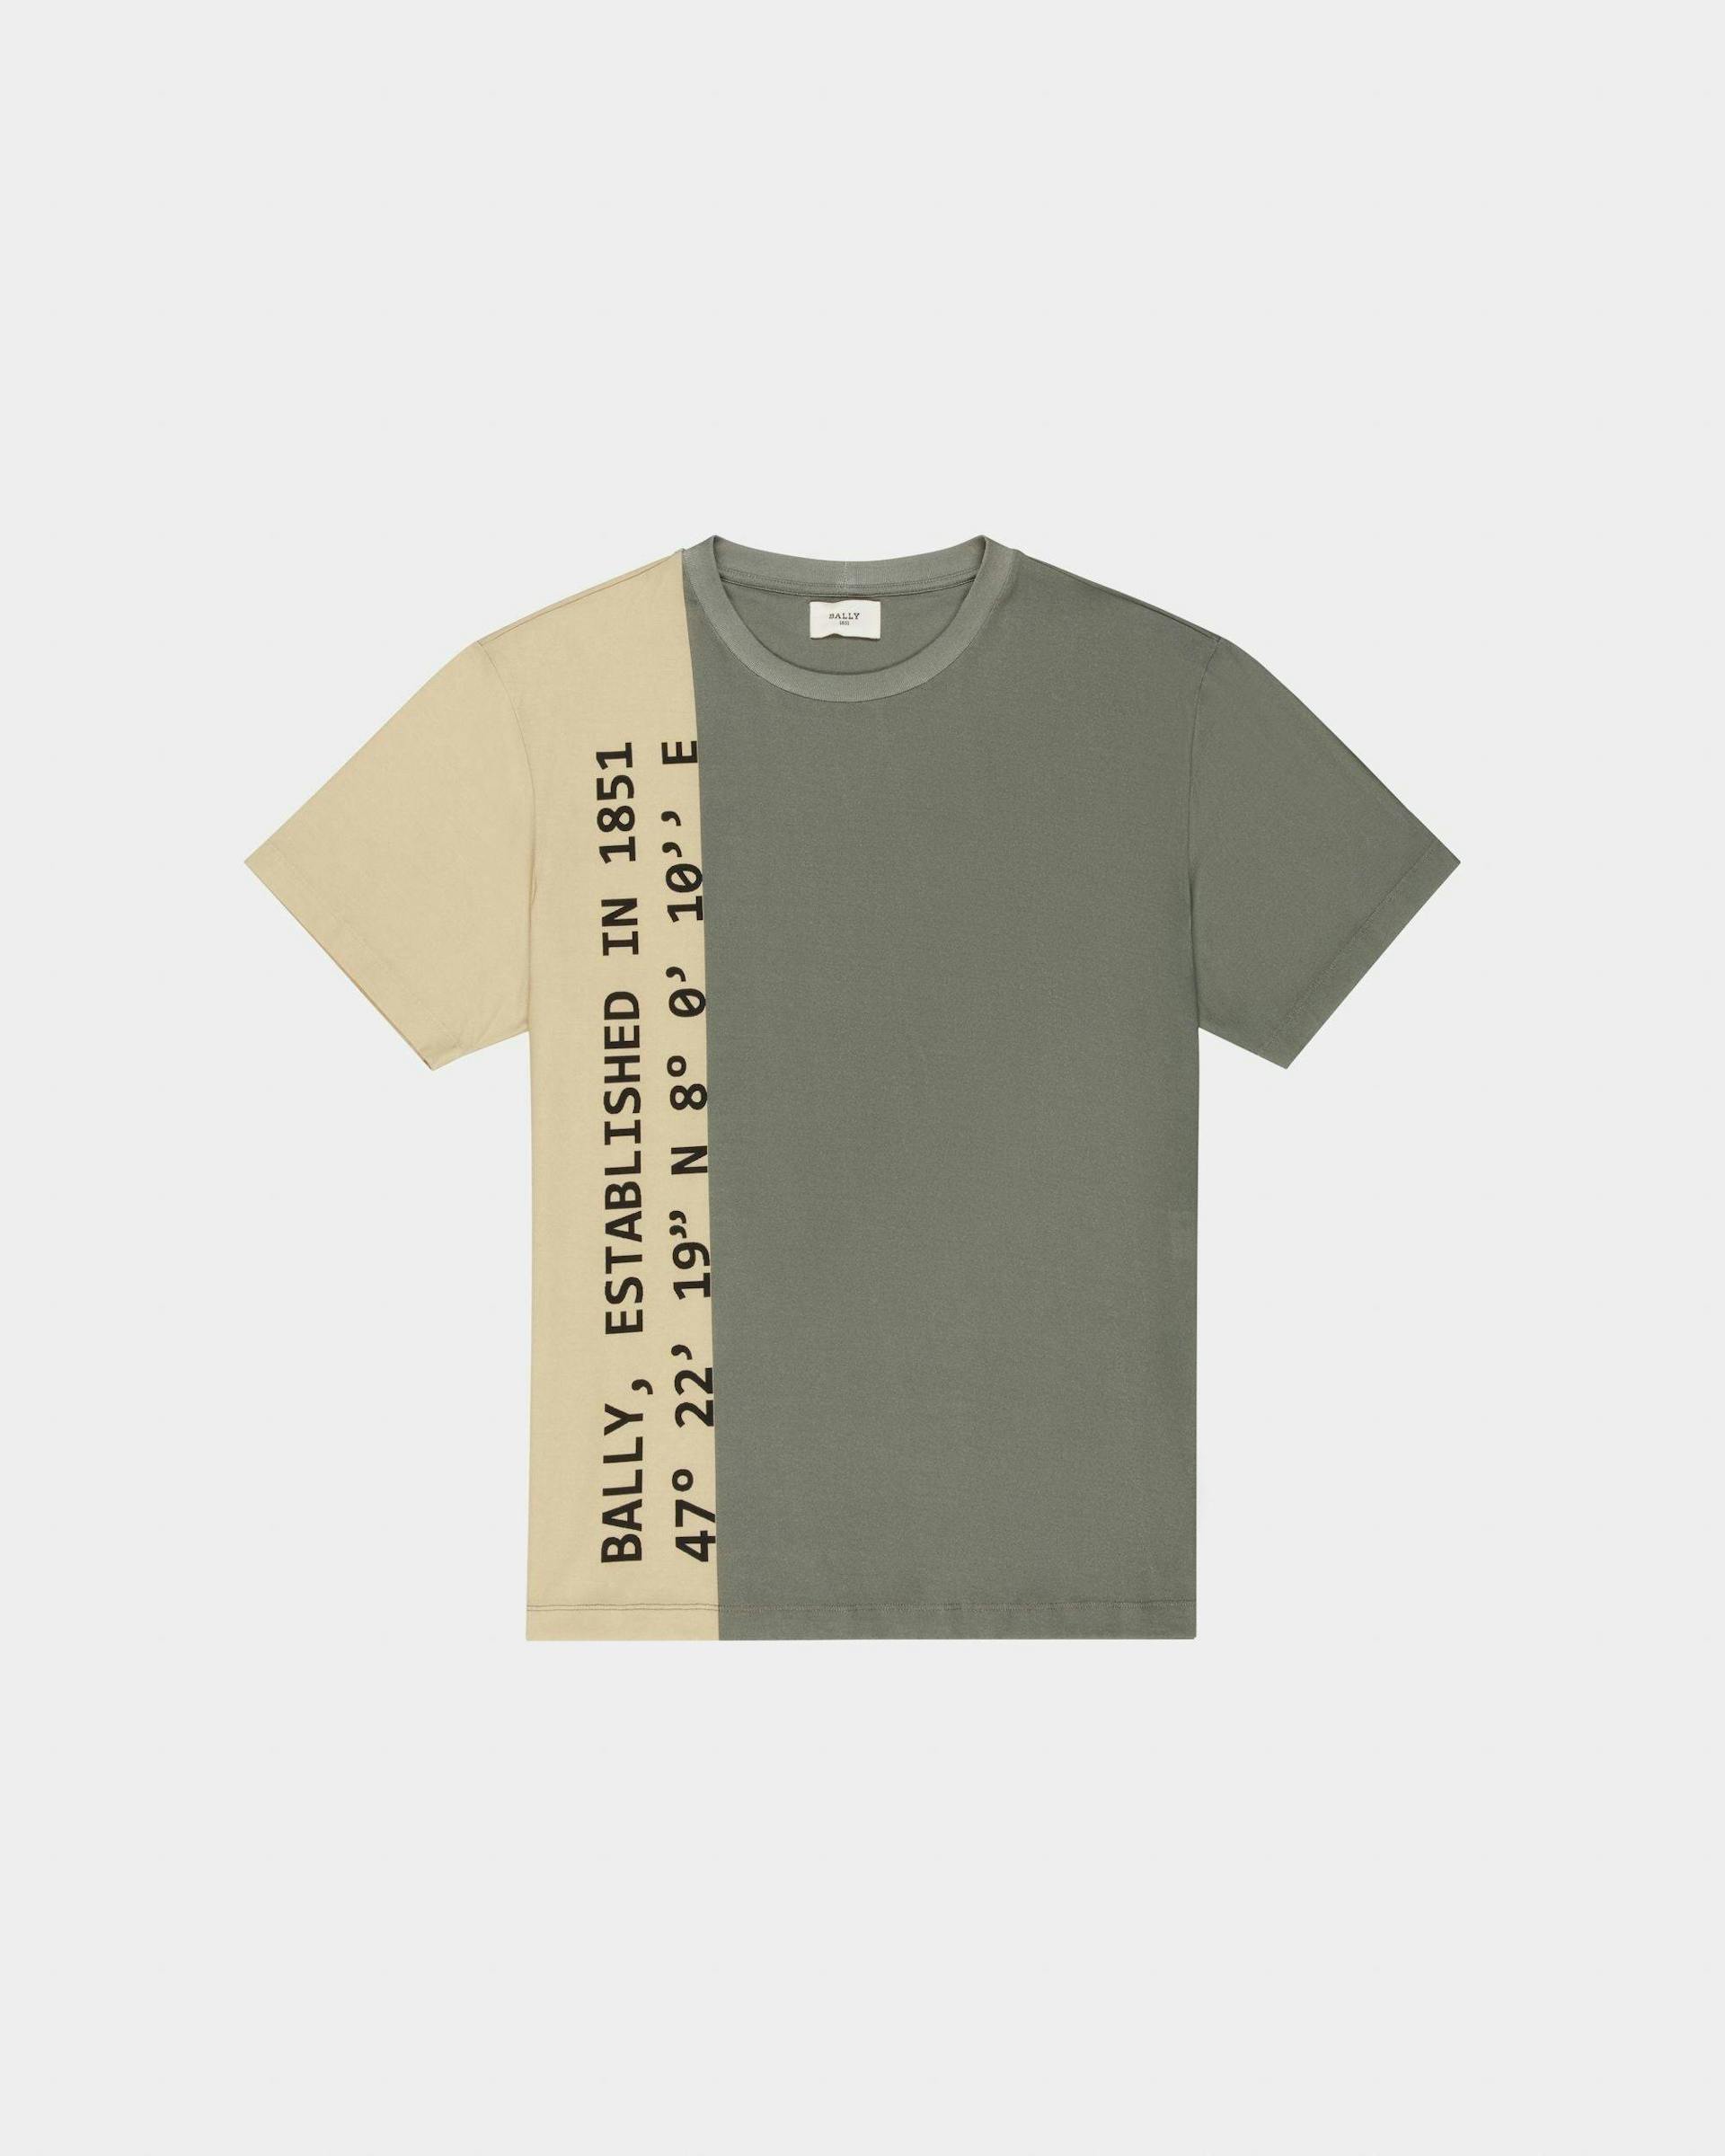 T-Shirt En Coton Biologique Beige Et Vert - Homme - Bally - 01